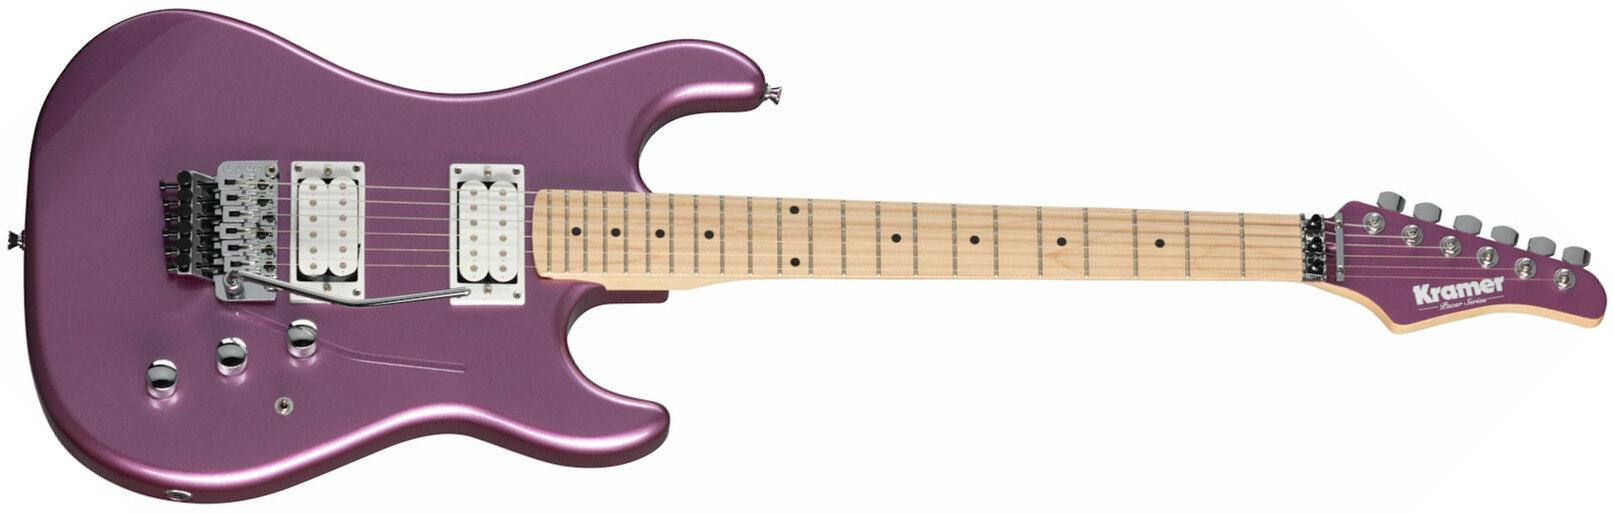 Kramer Pacer Classic 2h Fr Mn - Purple Passion Metallic - Elektrische gitaar in Str-vorm - Main picture